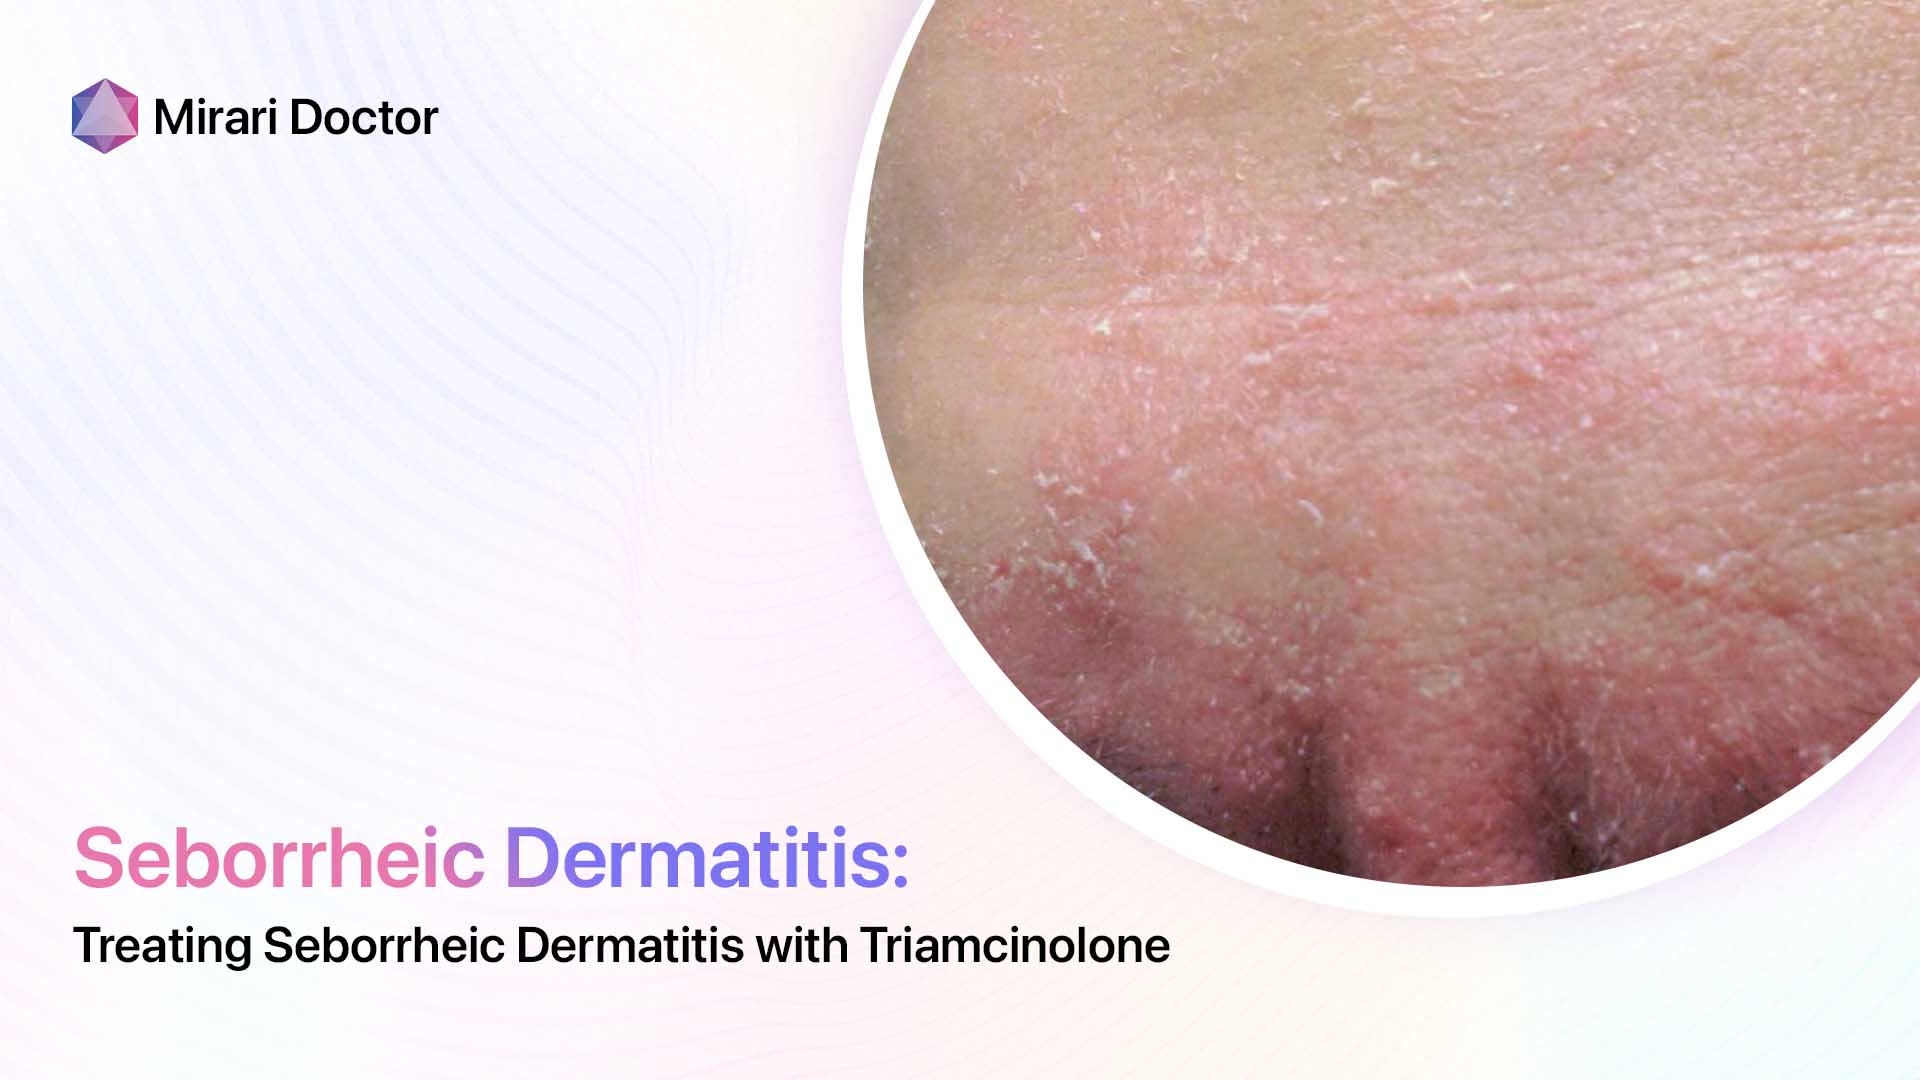 Featured image for “Treating Seborrheic Dermatitis with Triamcinolone”